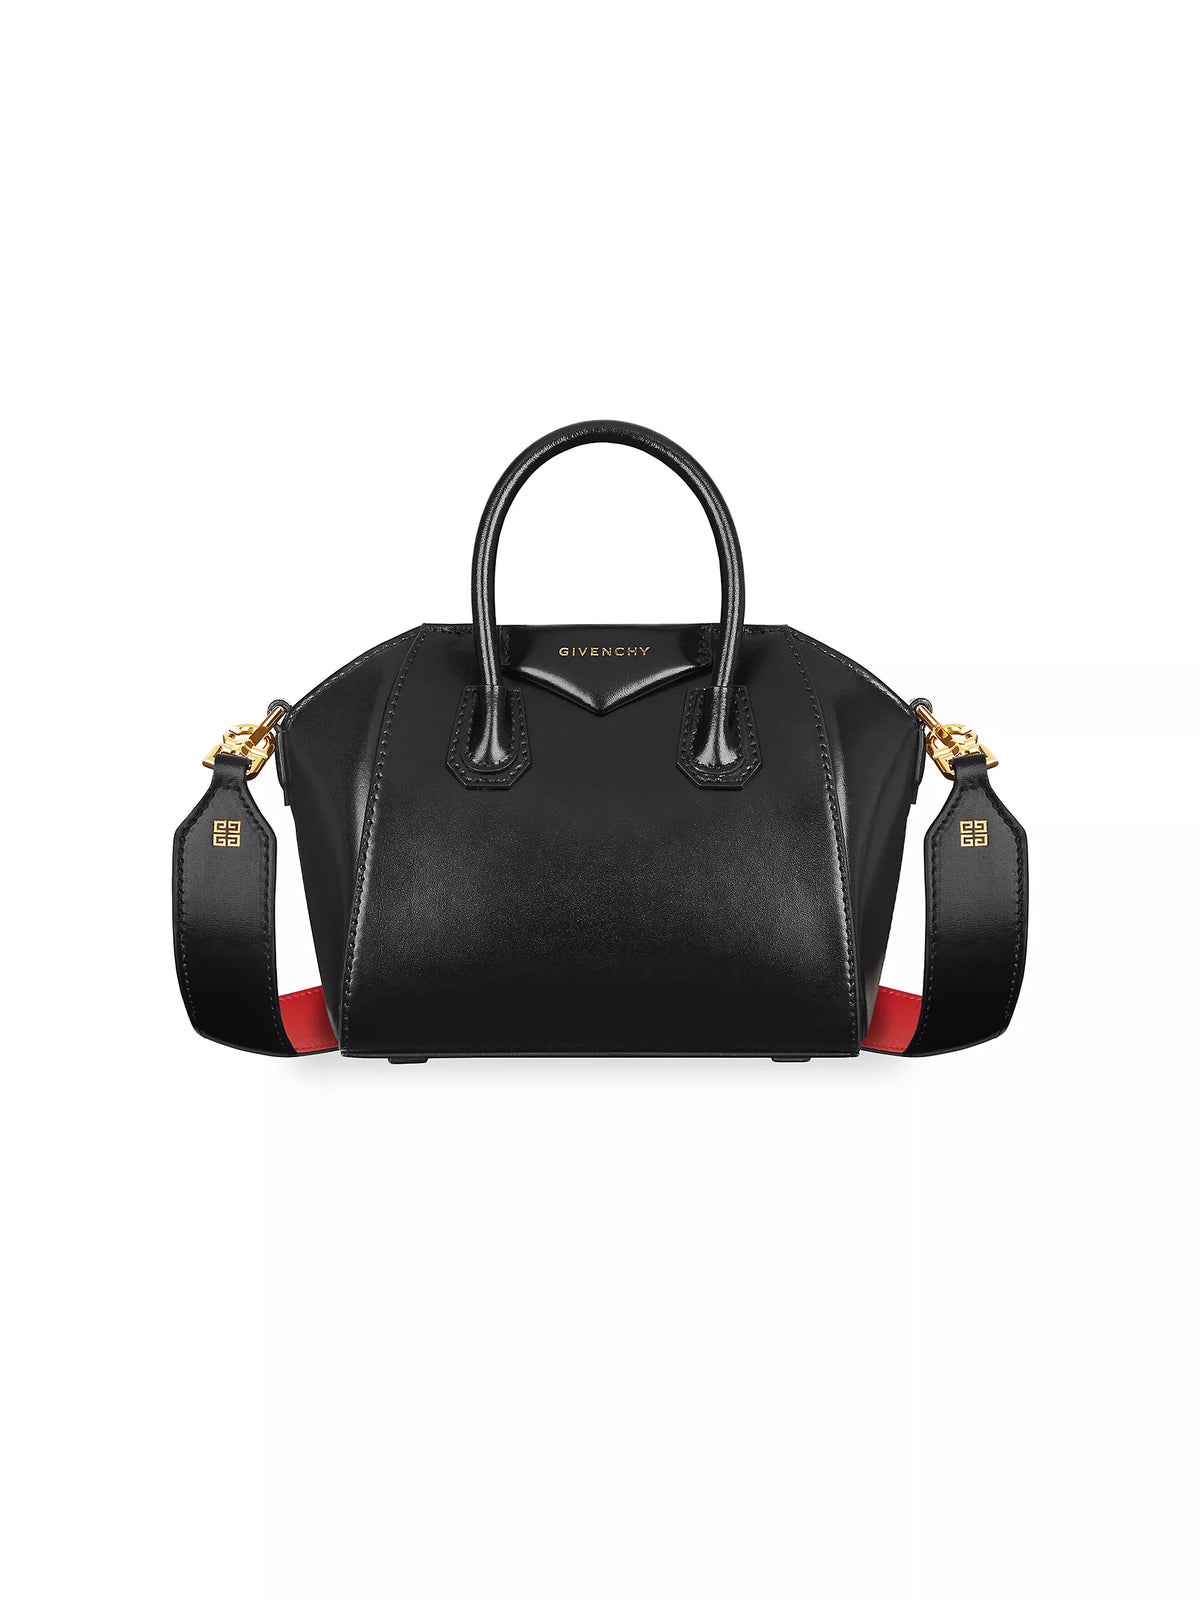 Givenchy Antigona Toy Bag